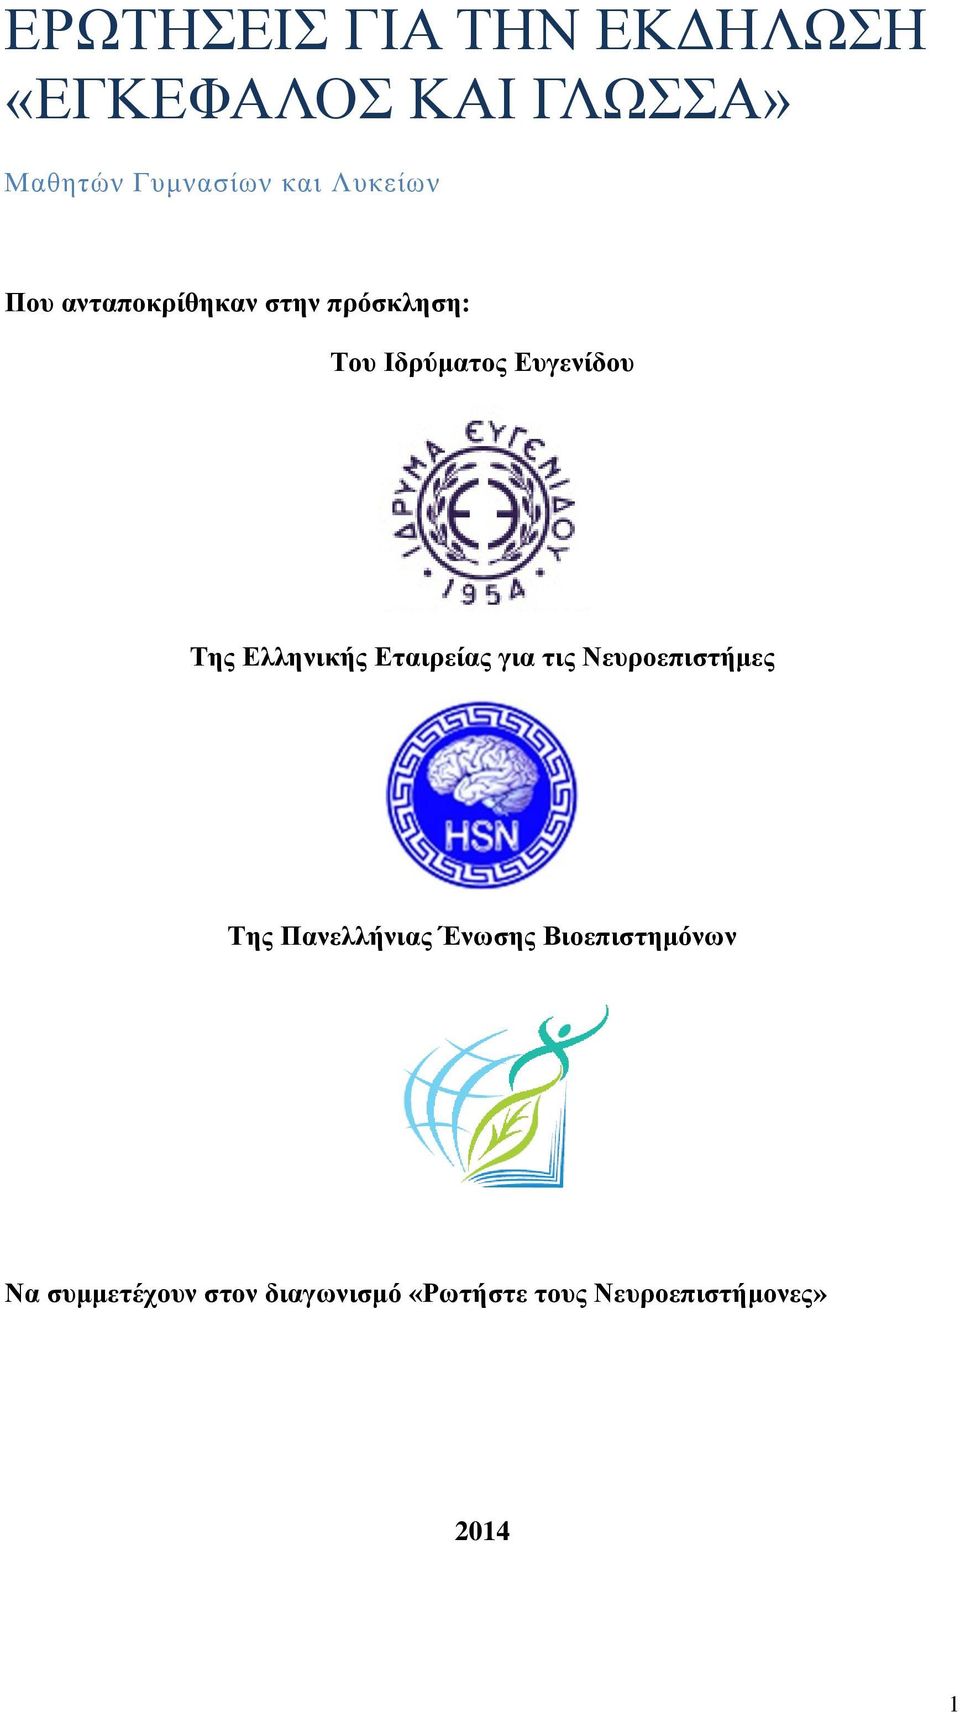 Ελληνικής Εταιρείας για τις Νευροεπιστήμες Της Πανελλήνιας Ένωσης